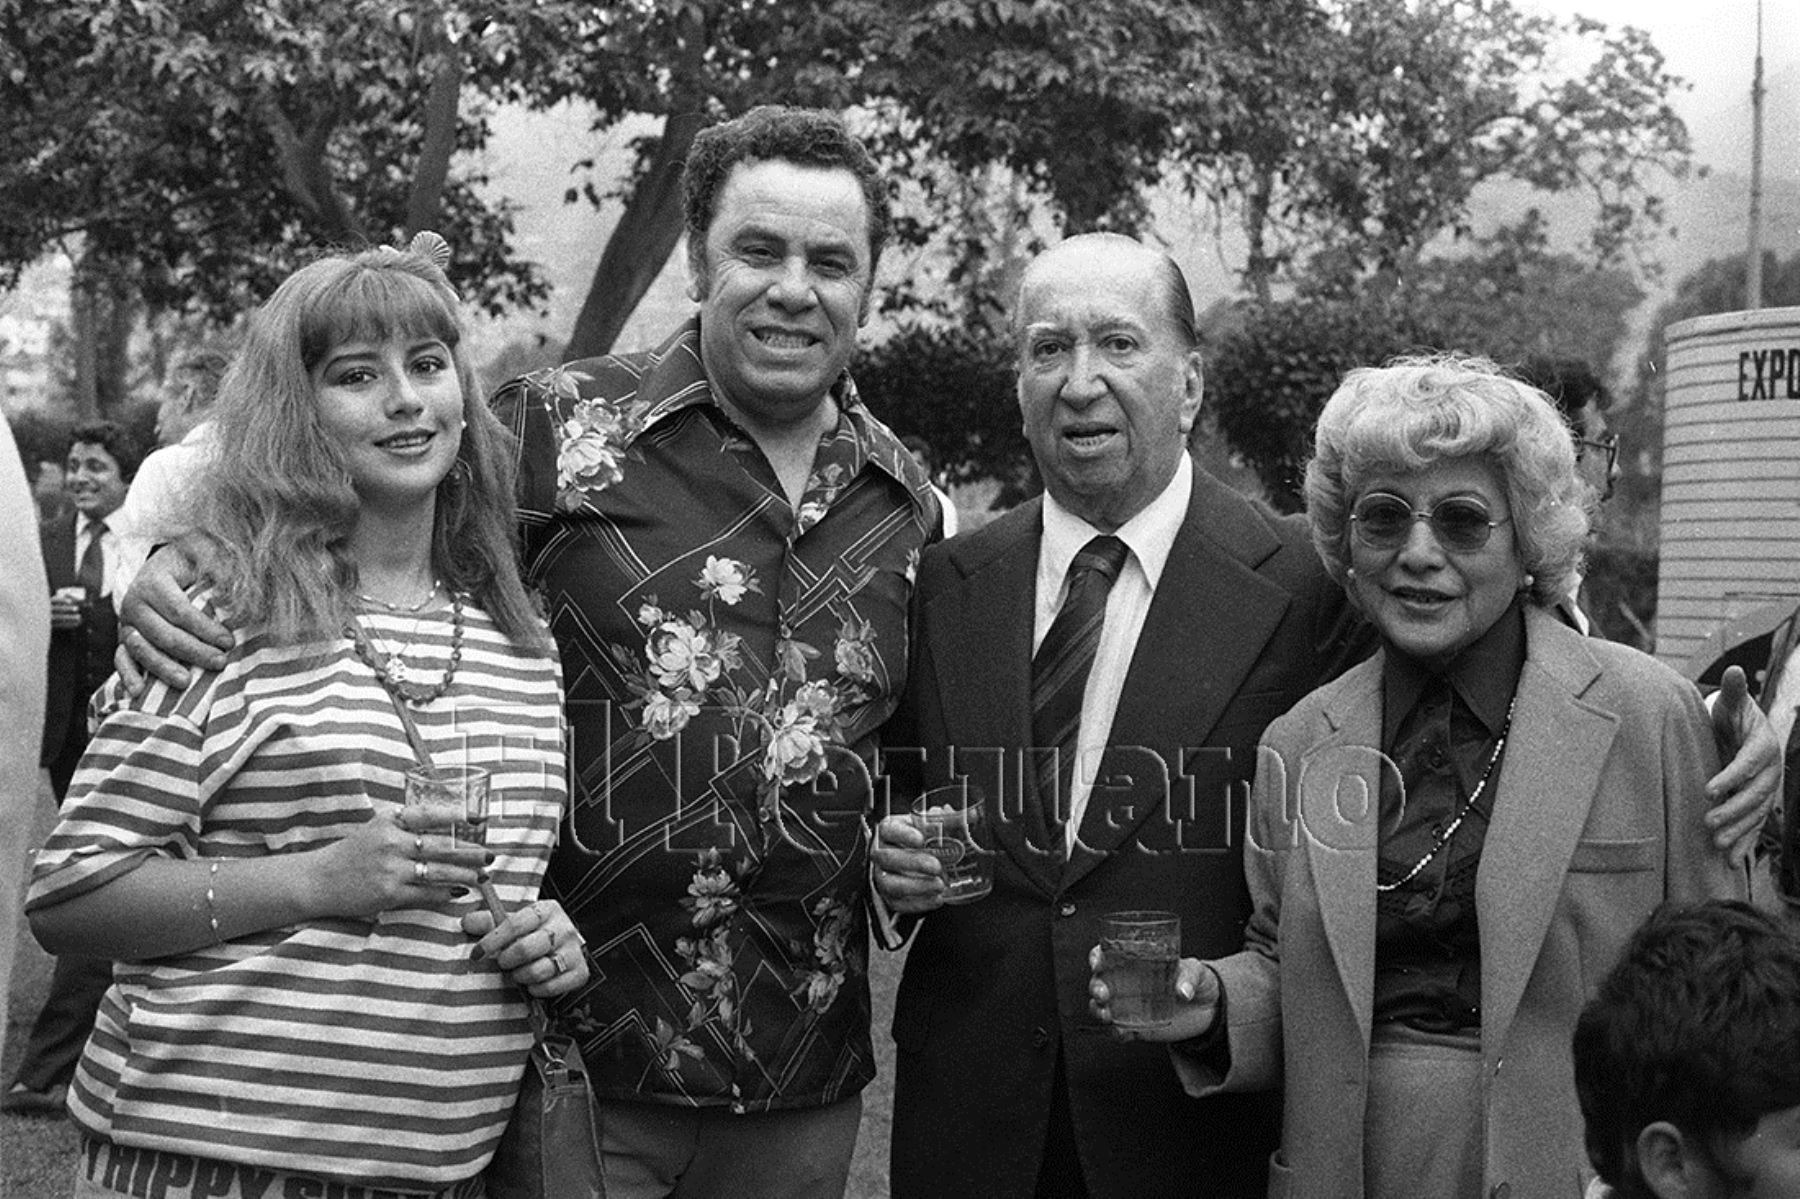 Lima - 29 octubre 1985 / El compositor Augusto Polo Campos junto a Susy Diaz y Jesús Vásquez durante una reunión de artistas criollos en el club Sporting Cristal. Foto: Archivo Histórico de El Peruano